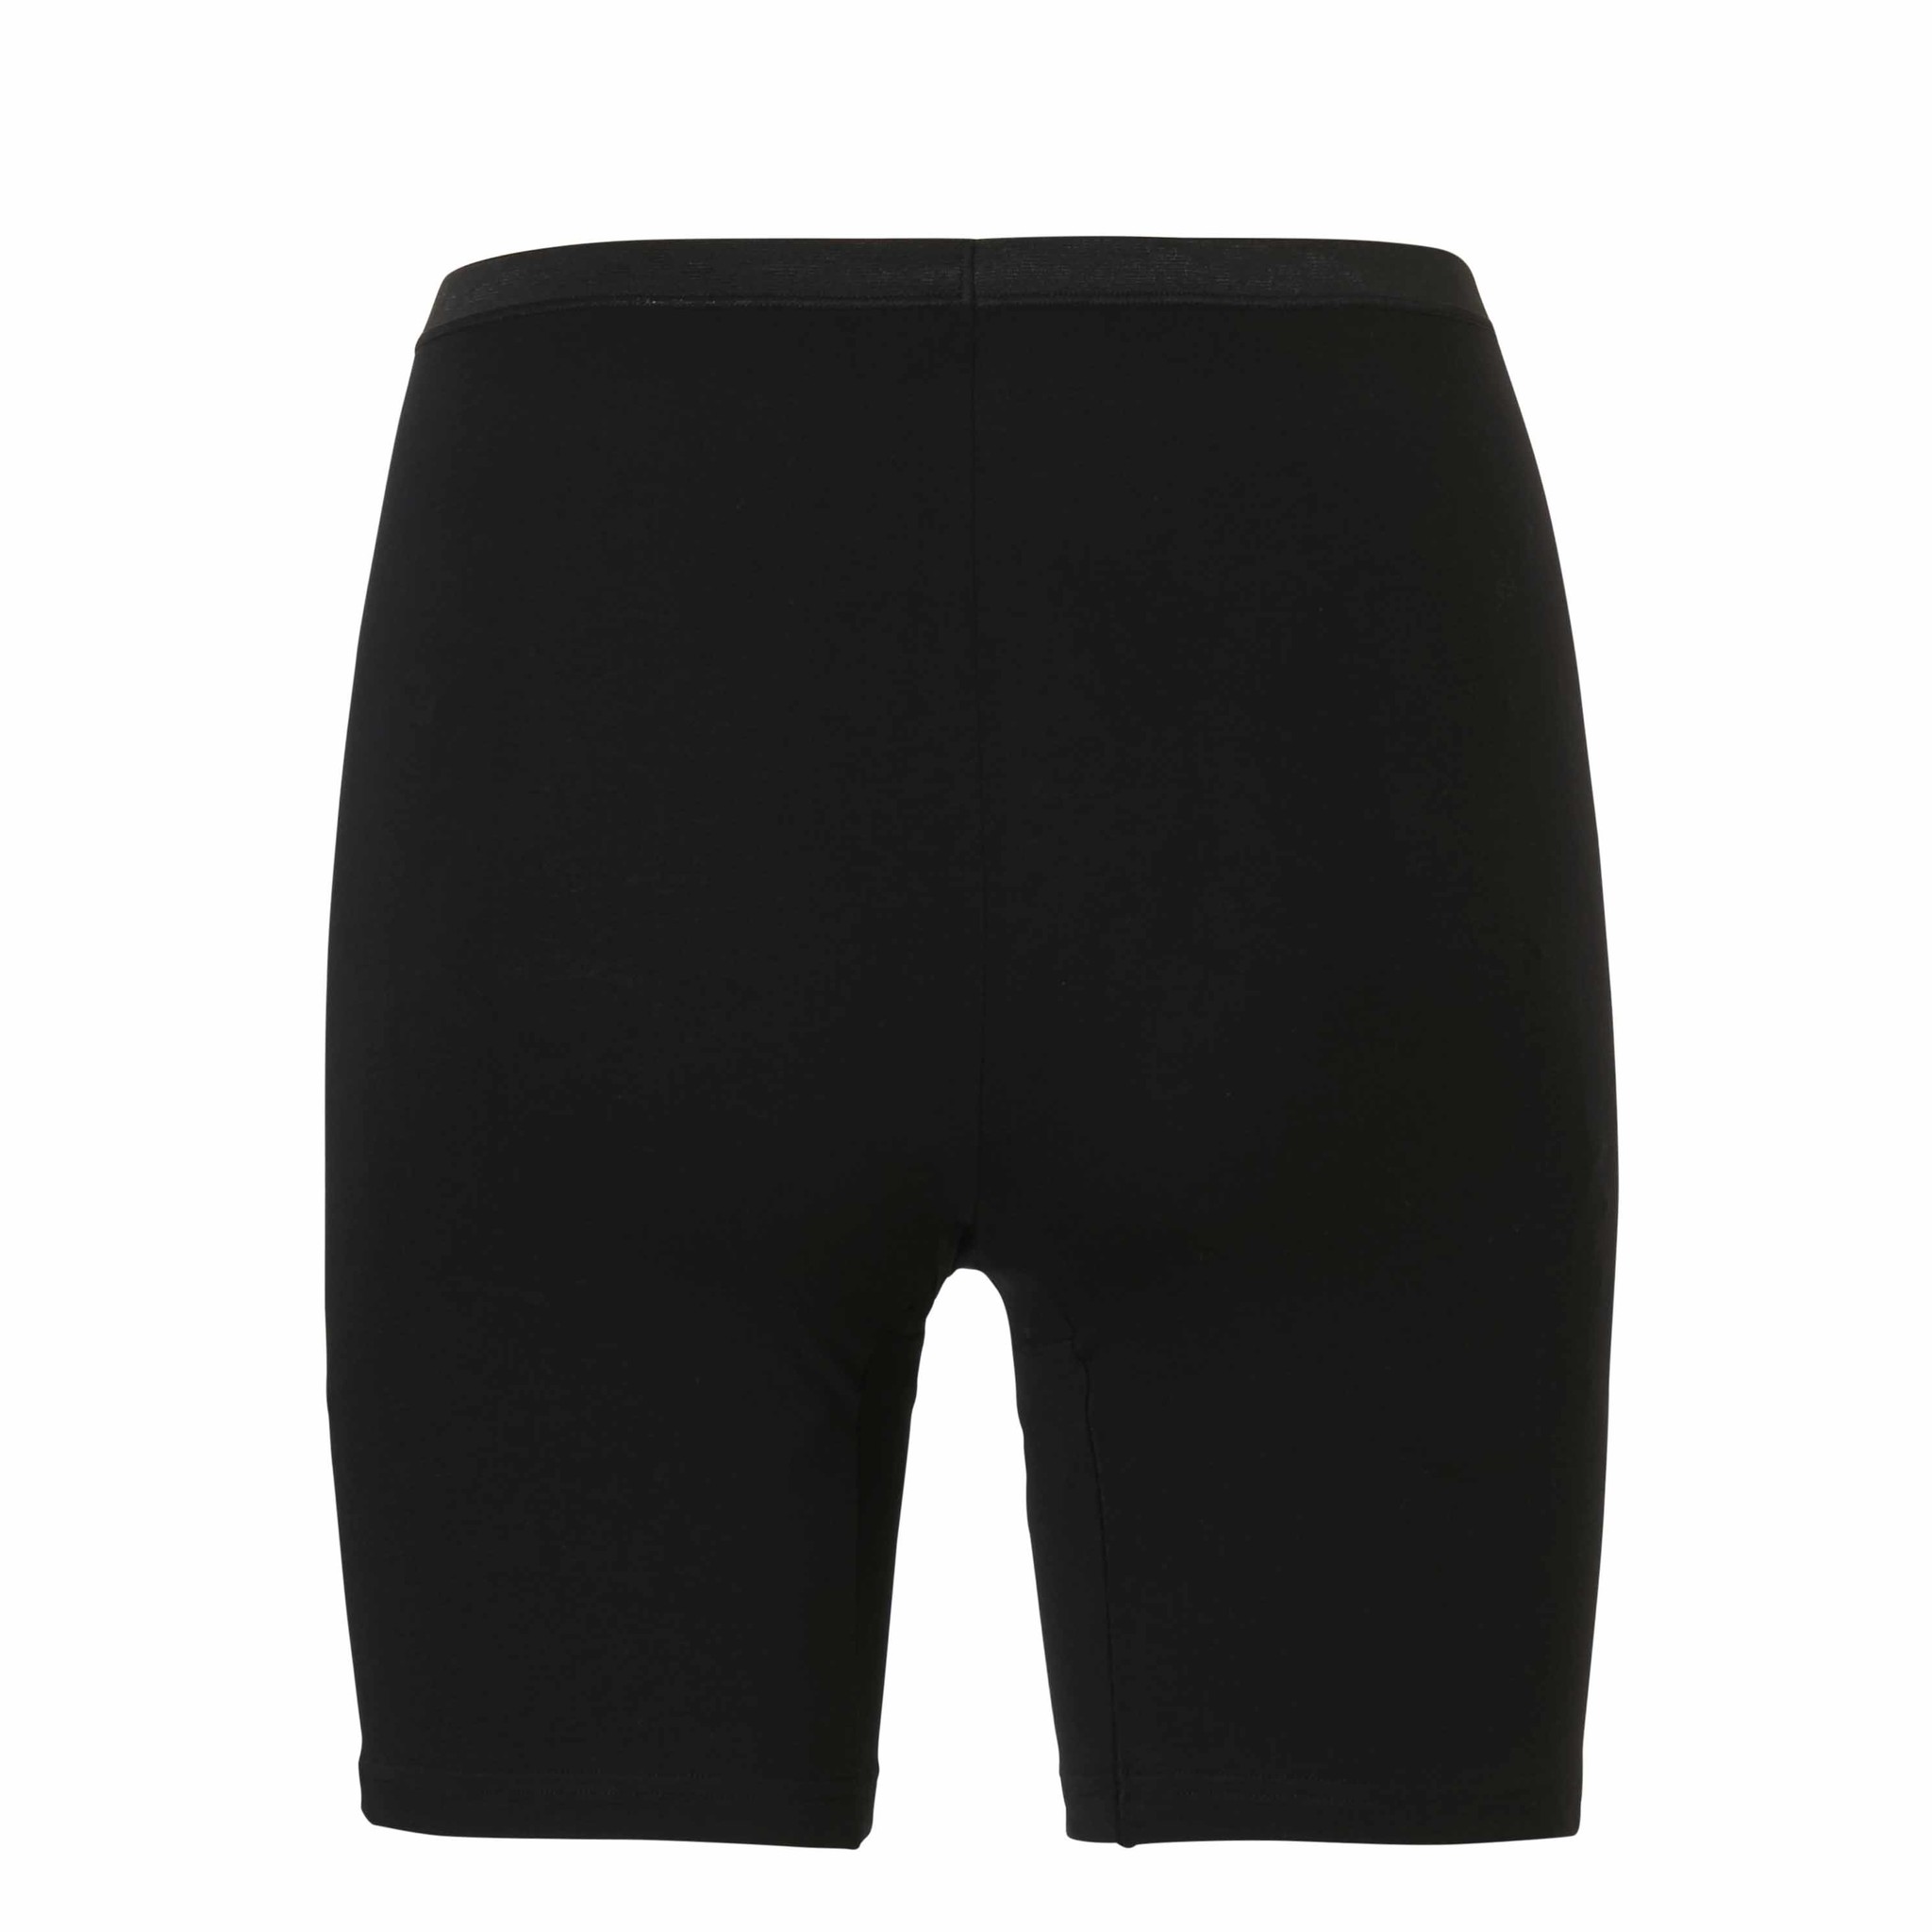 Auto Recyclen Methode Cotonella Lange Dames Onderbroek met Pijpjes Zwart | Underwear District